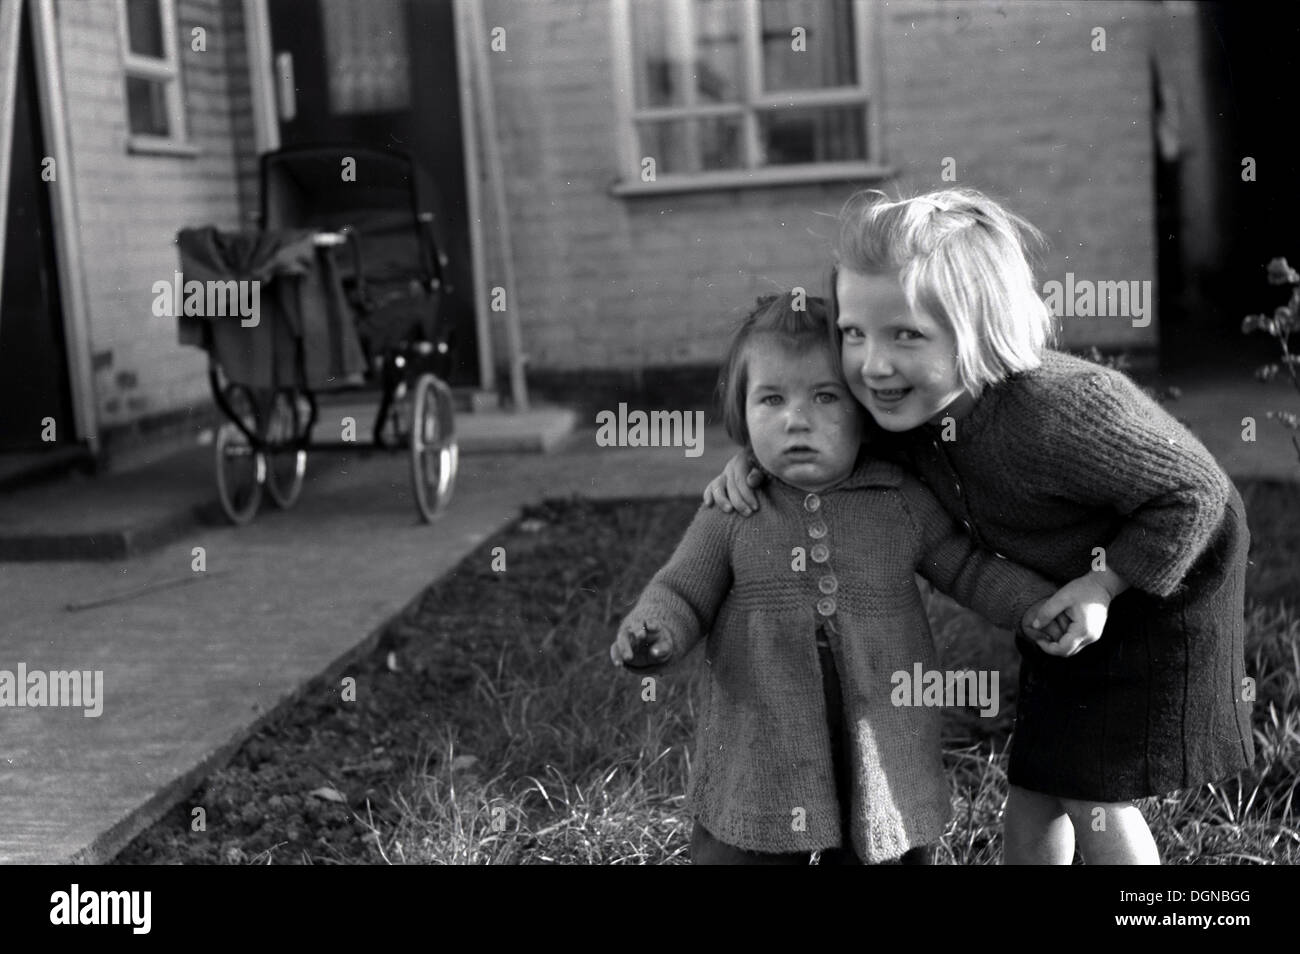 Image historique,1950 de deux petites filles dans un jardin à l'arrière, d'un aîné maintenant le plus petit de se tenir debout. Ancien style de la pram en arrière-plan. Banque D'Images